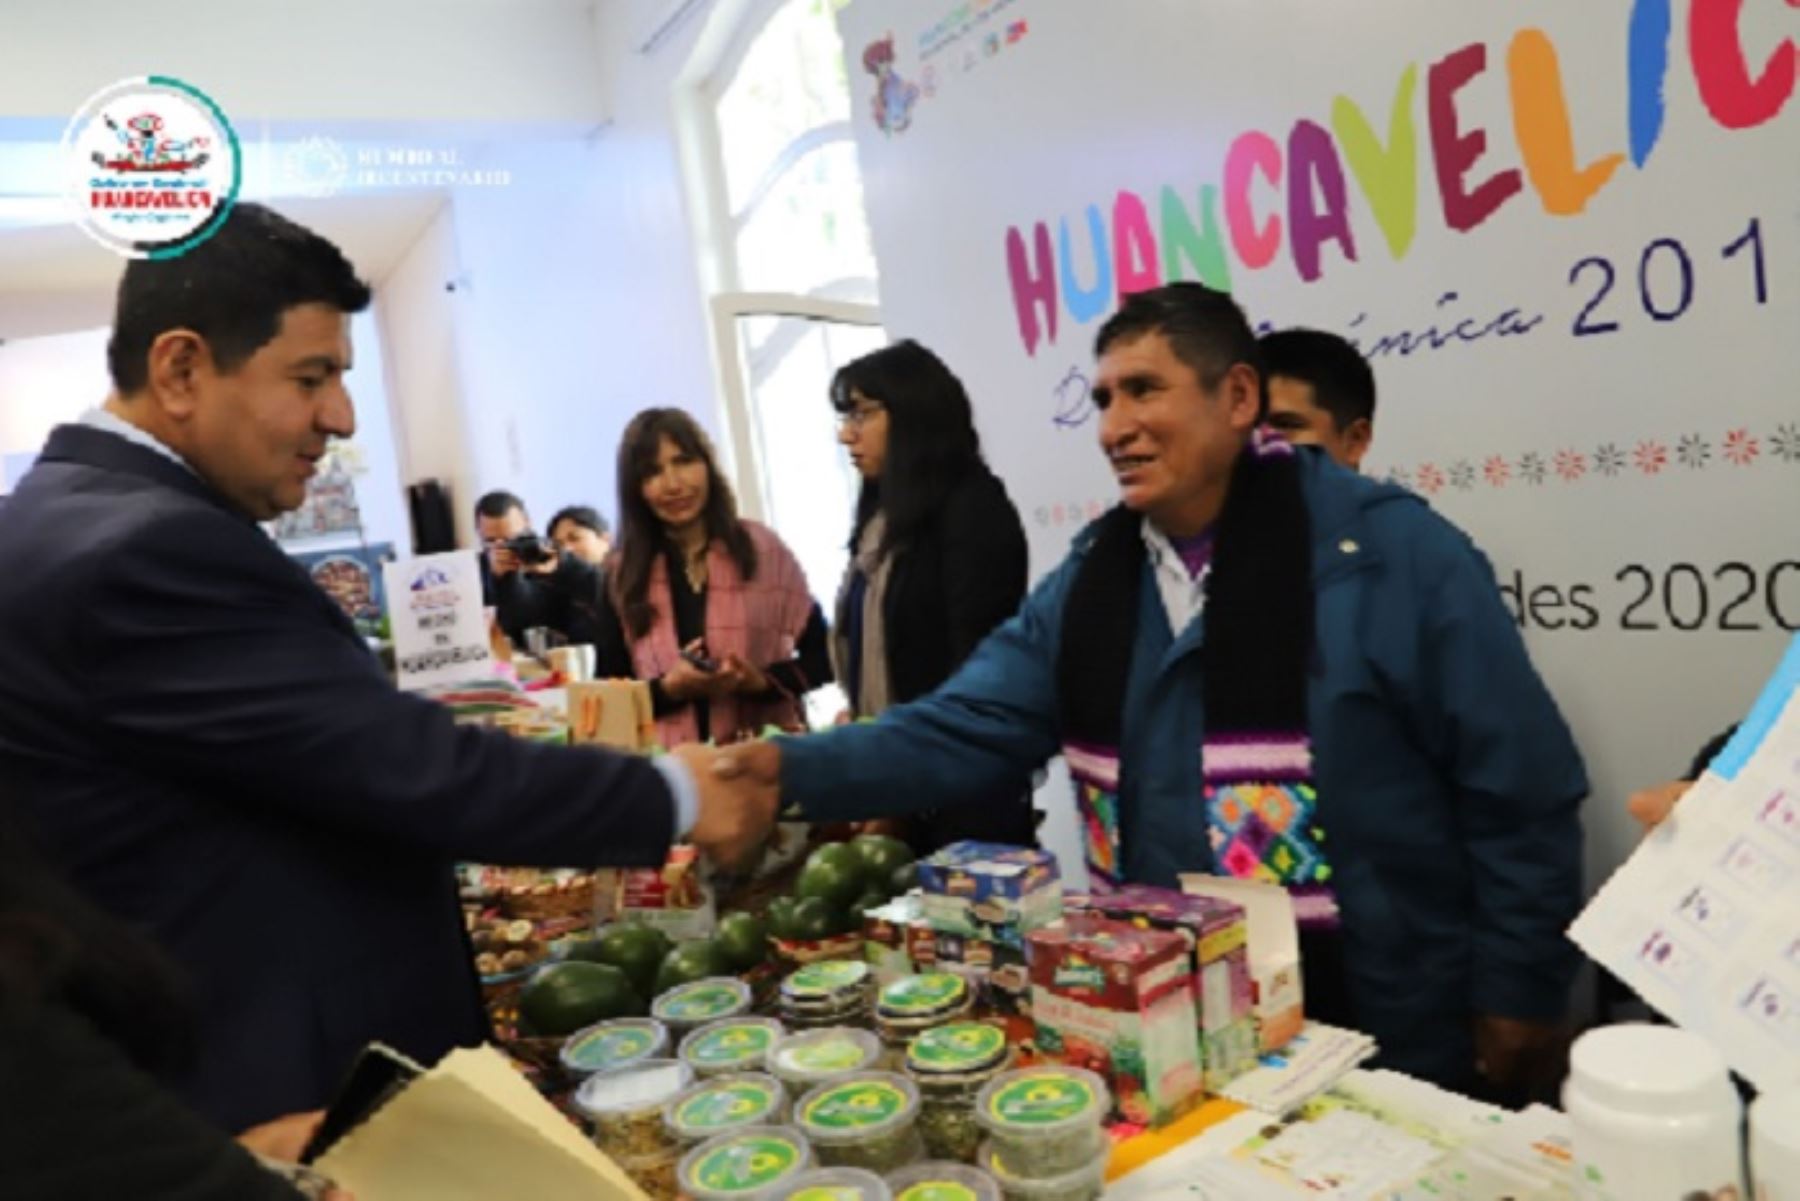 La región Huancavelica será la primera sede de la Expo Perú Los Andes, que se realizará del 18 al 21 de julio del próximo año, esperándose recibir más de 40,000 visitantes y generar negocios que superen los US$ 15 millones.ANDINA/Difusión